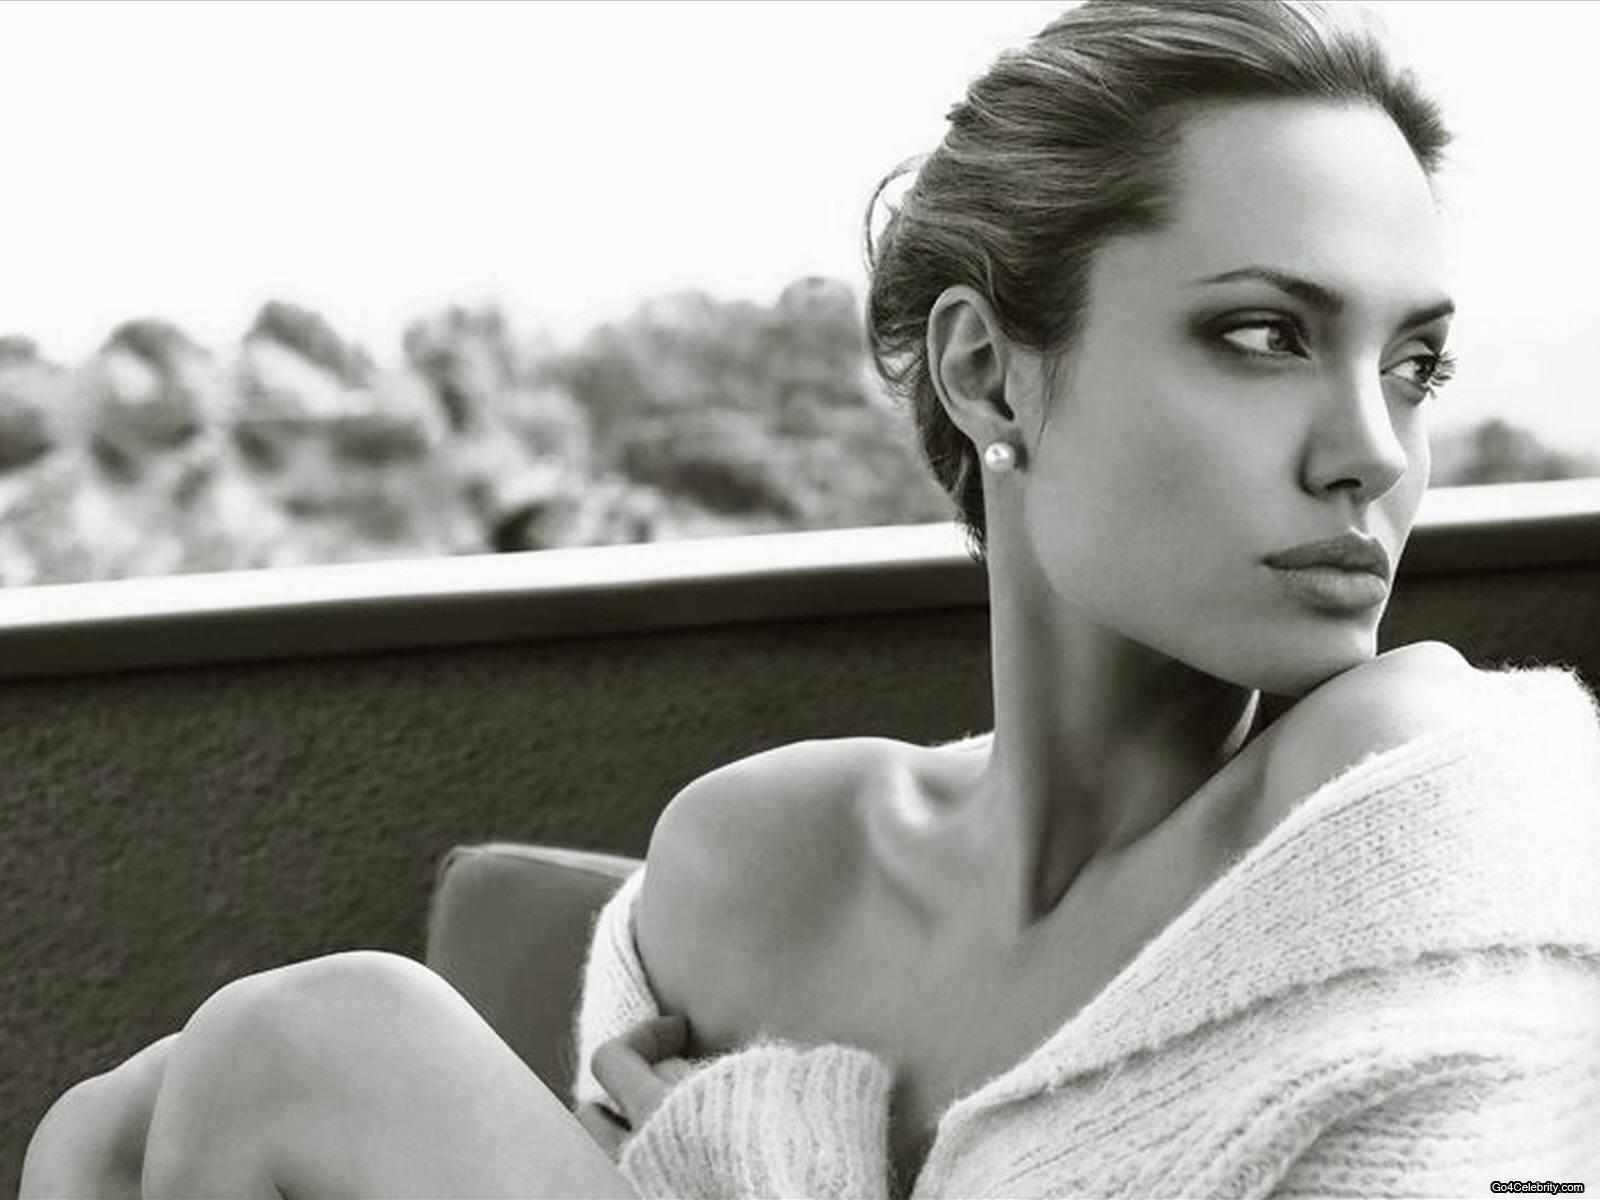 Анджелина Джоли, Angelina Jolie Voight, скачать фотографии, обои для рабочего стола, wallpapers, актриса